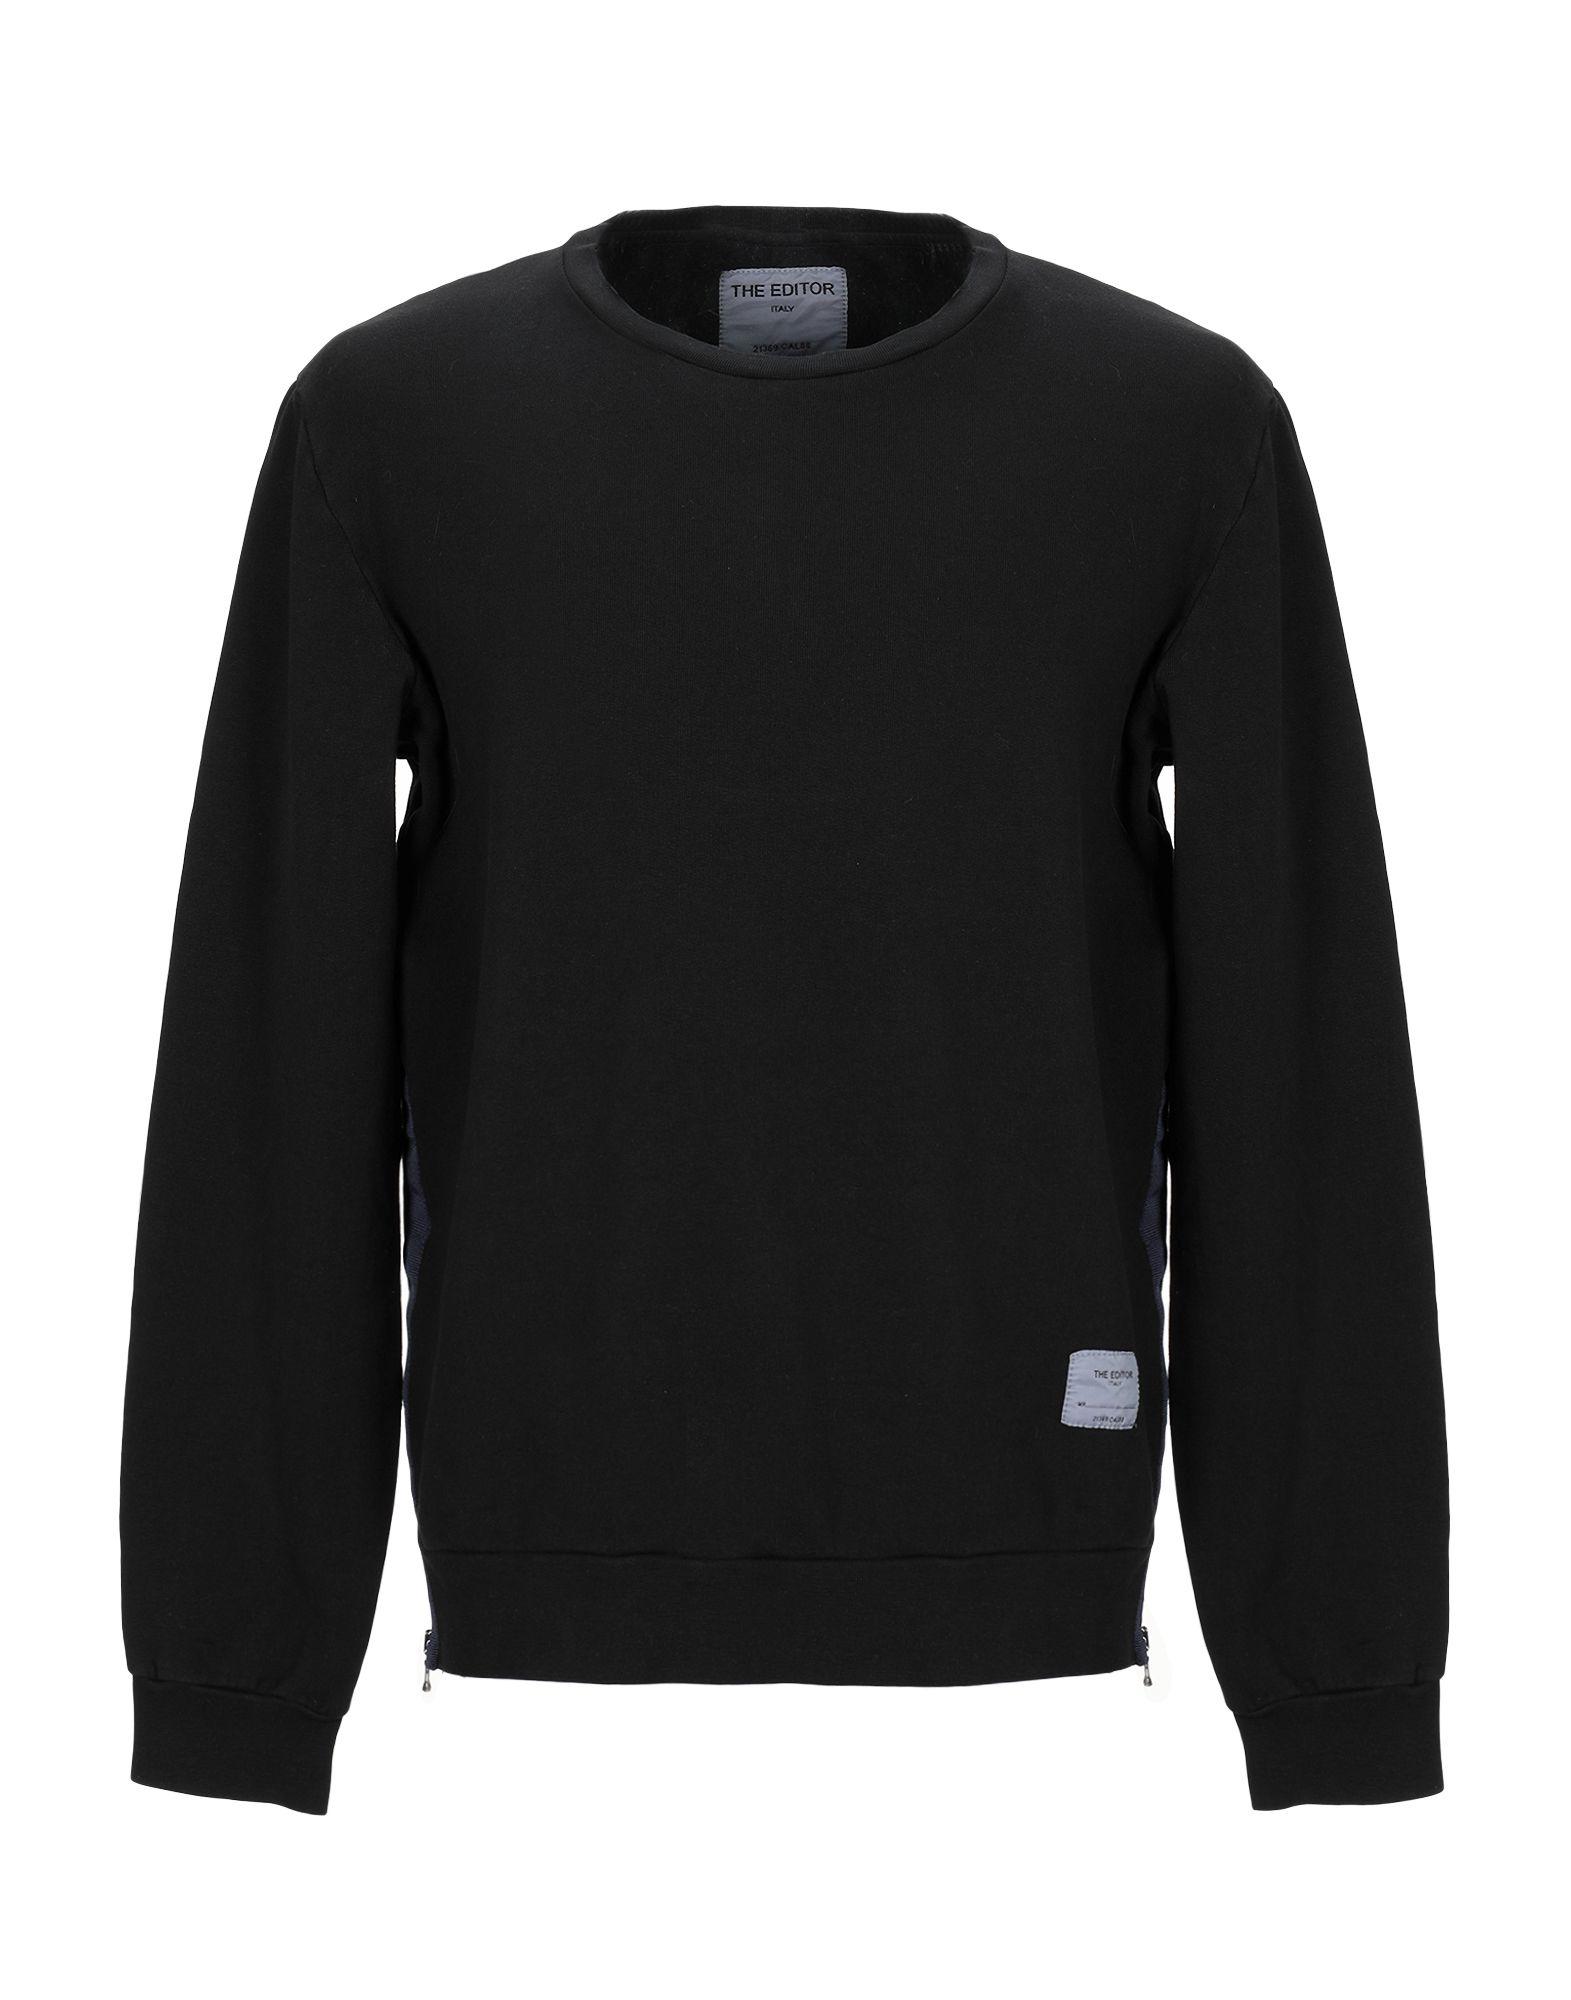 Saucony Fleece Sweatshirt in Black for Men - Lyst